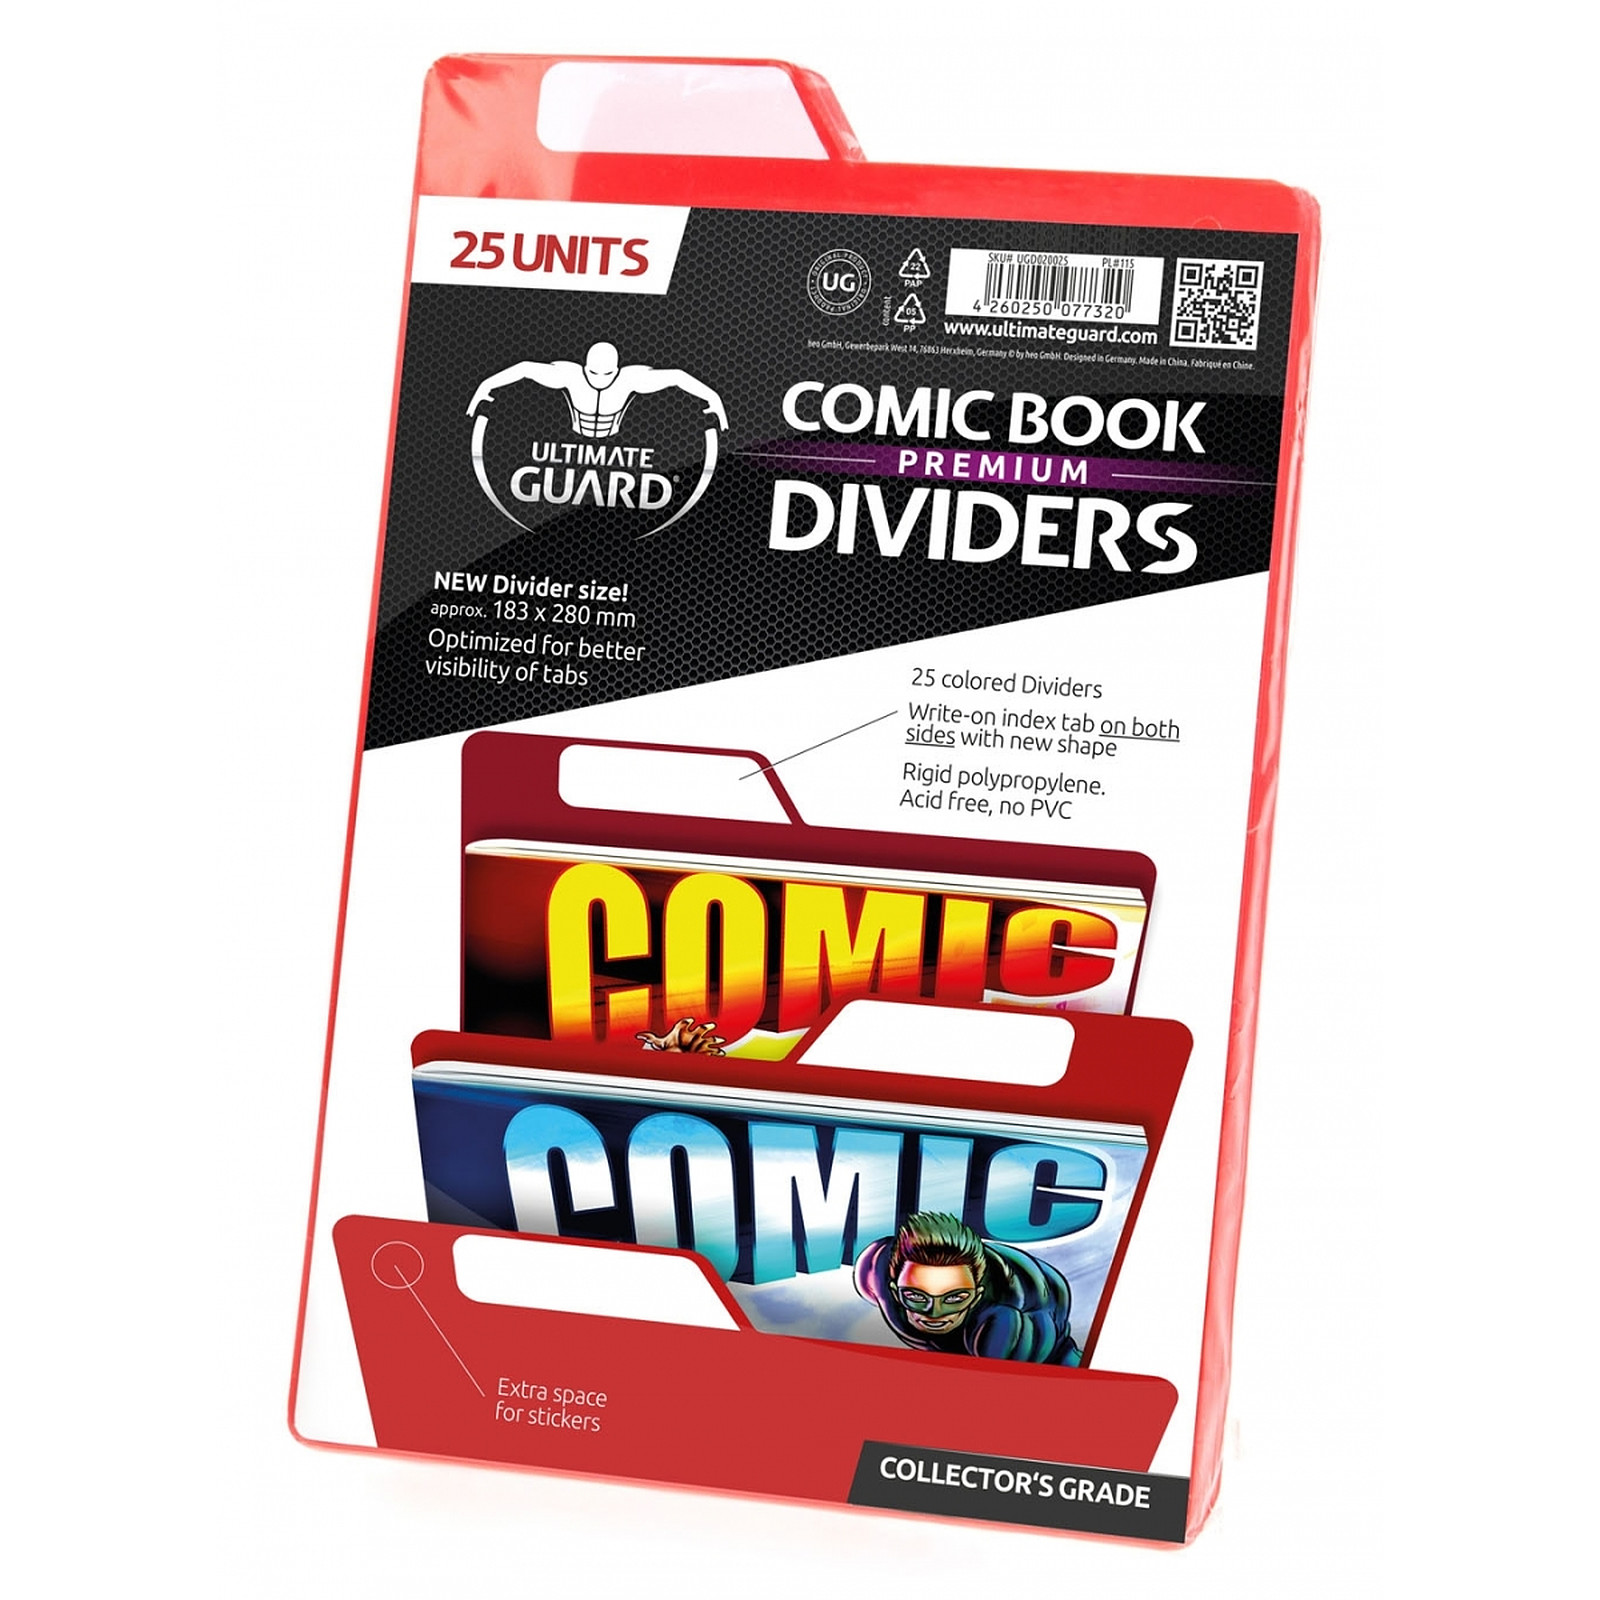 Ultimate Guard - 25 intercalaires pour Comics Premium Comic Book Dividers Rouge - Accessoire jeux Ultimate Guard